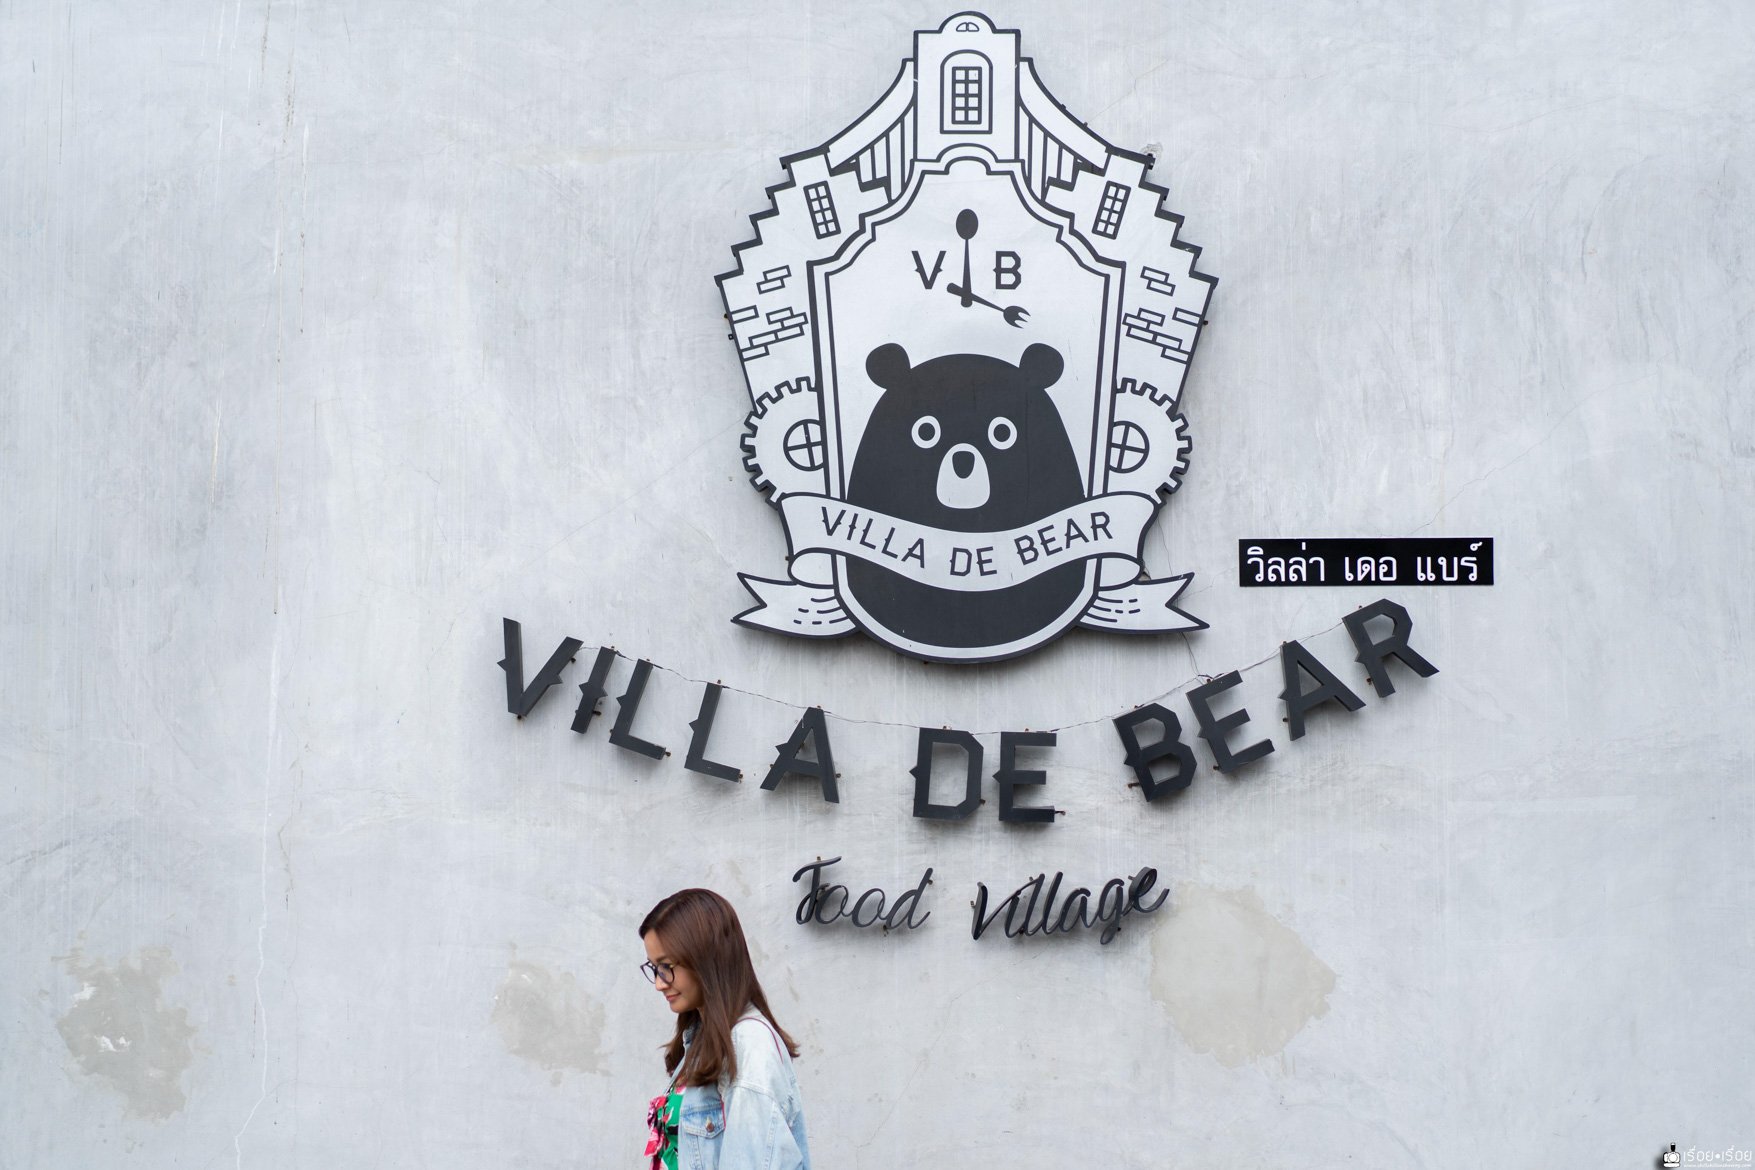 อิ่มหมีพลีมัน ไปกินด้วยกันที่ Villa de bear ร้านดังย่านราชพฤกษ์